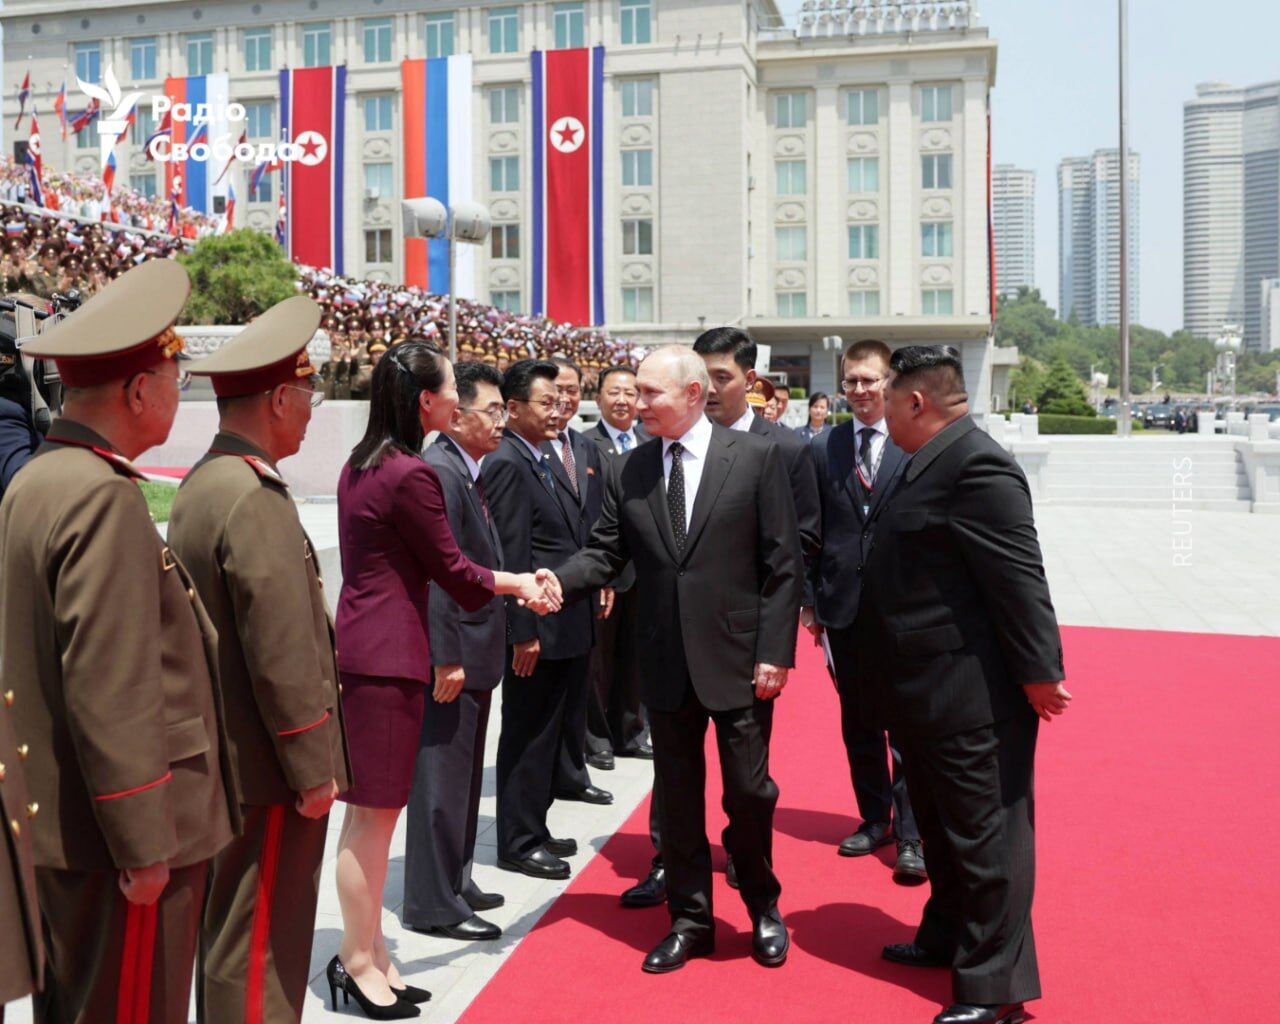 Ким Чен Ын заявил о расцвете отношений с Россией, а Путин позвал его в Москву: все детали визита российского диктатора в КНДР